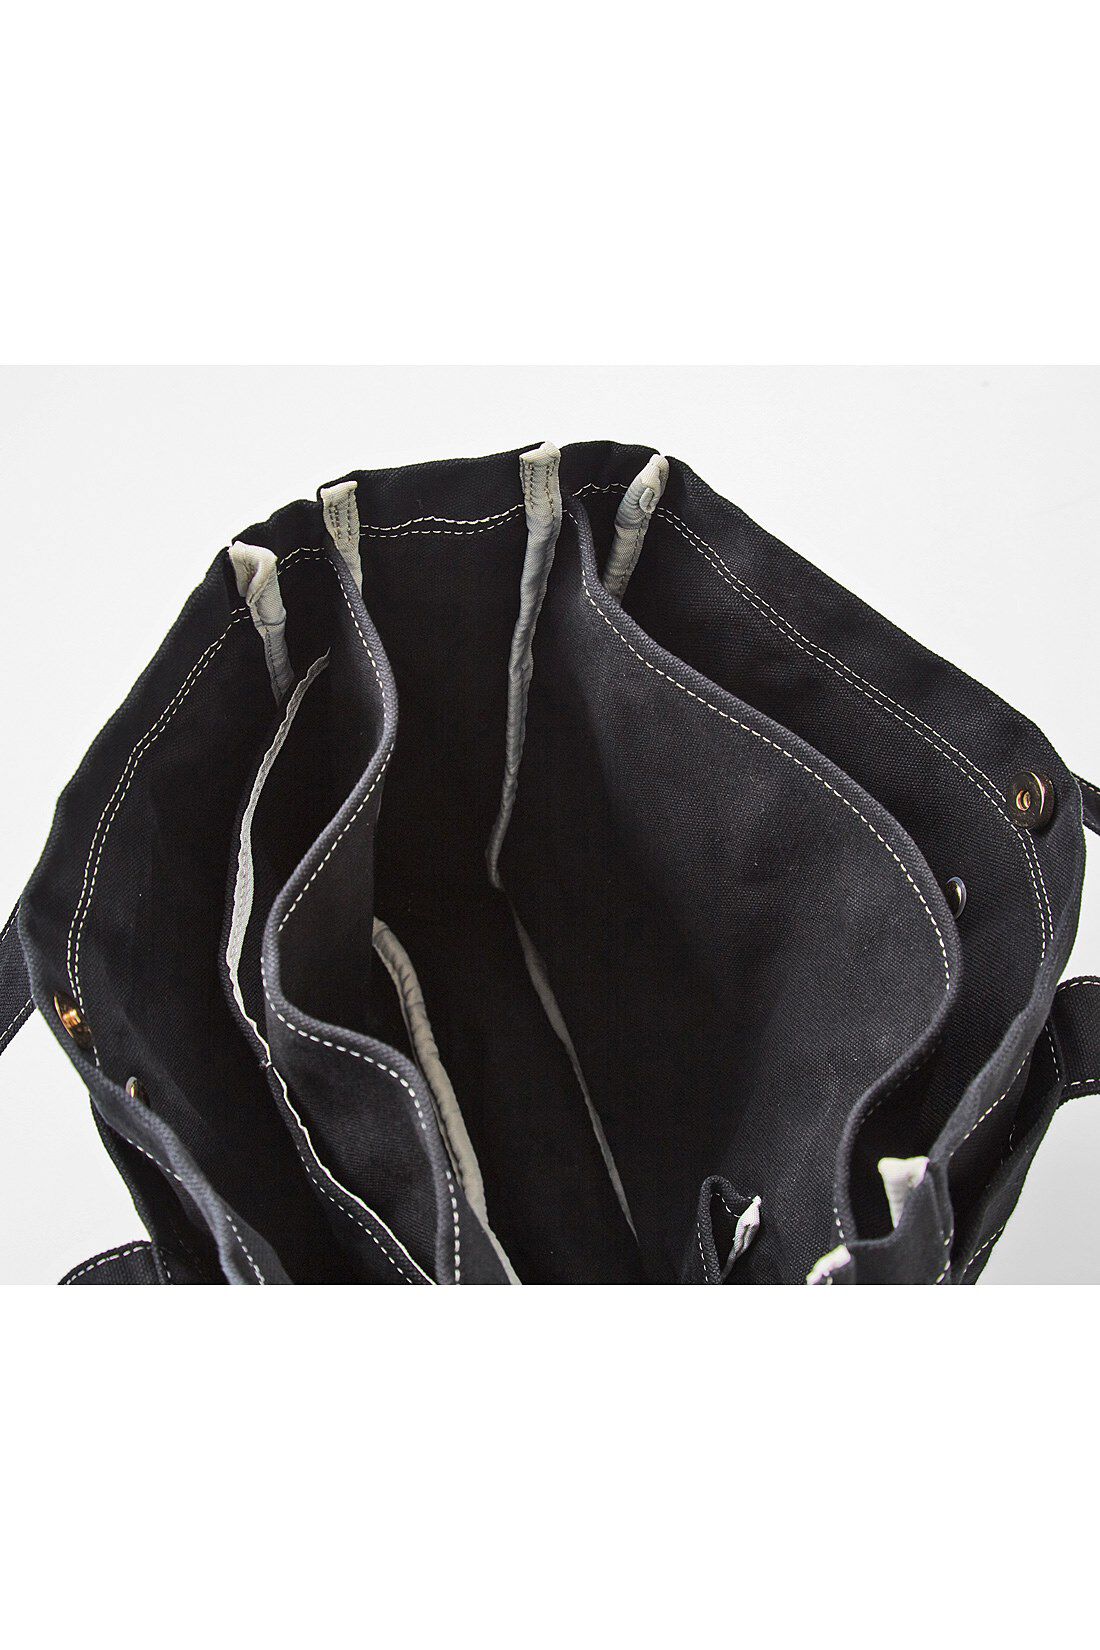 Real Stock|リブ イン コンフォート　黒染めすれば２度楽しめる整とん上手な高島帆布トートバッグ|化繊の縫製糸は染まらず、元の色が残るのもデザインのポイント。